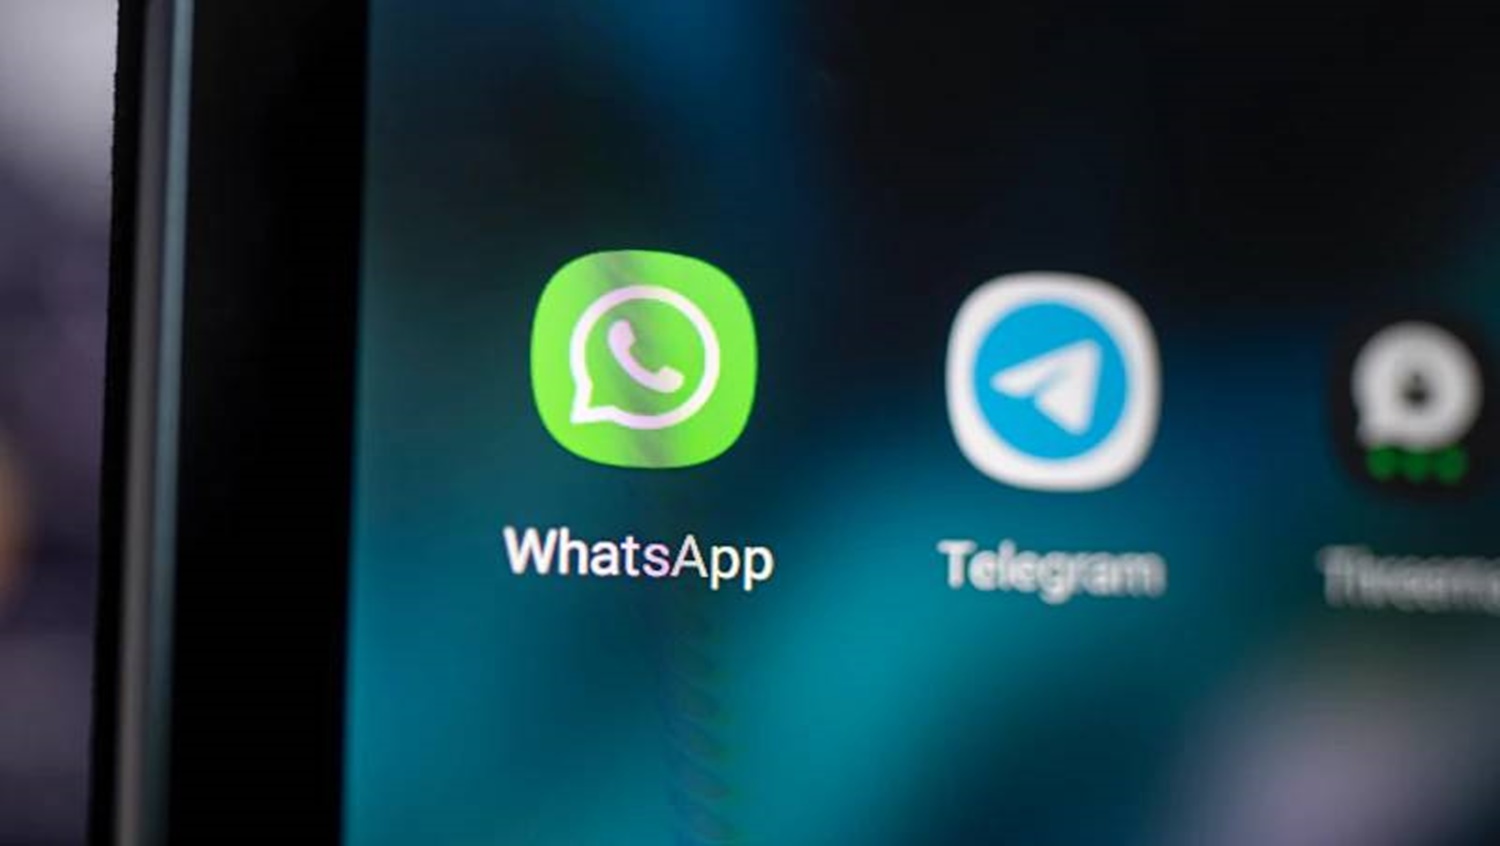 TECNOLOGIA: Whatsapp irá liberar novo recurso para android em breve